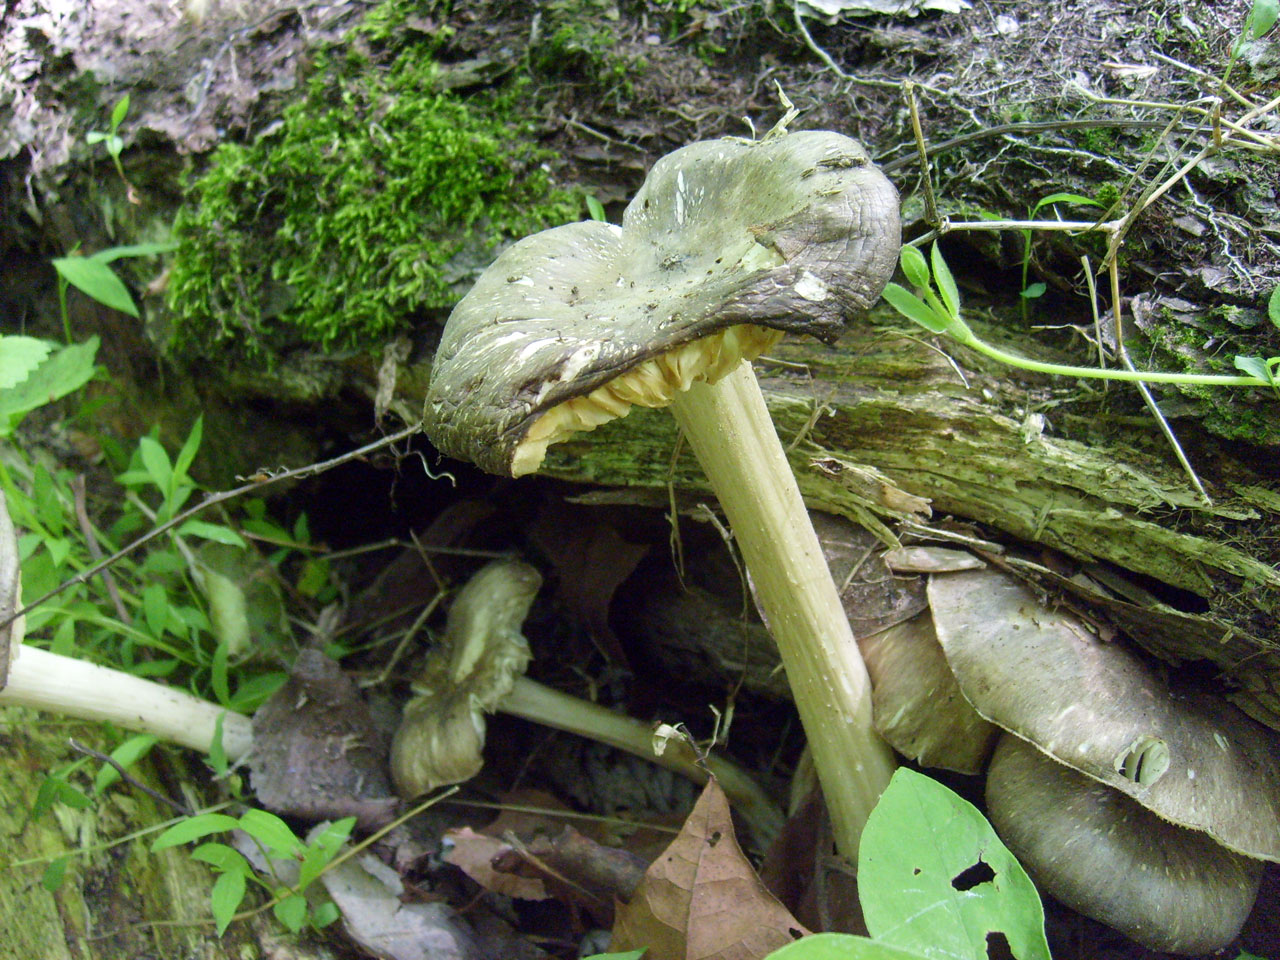 toad stool mushroom free photo